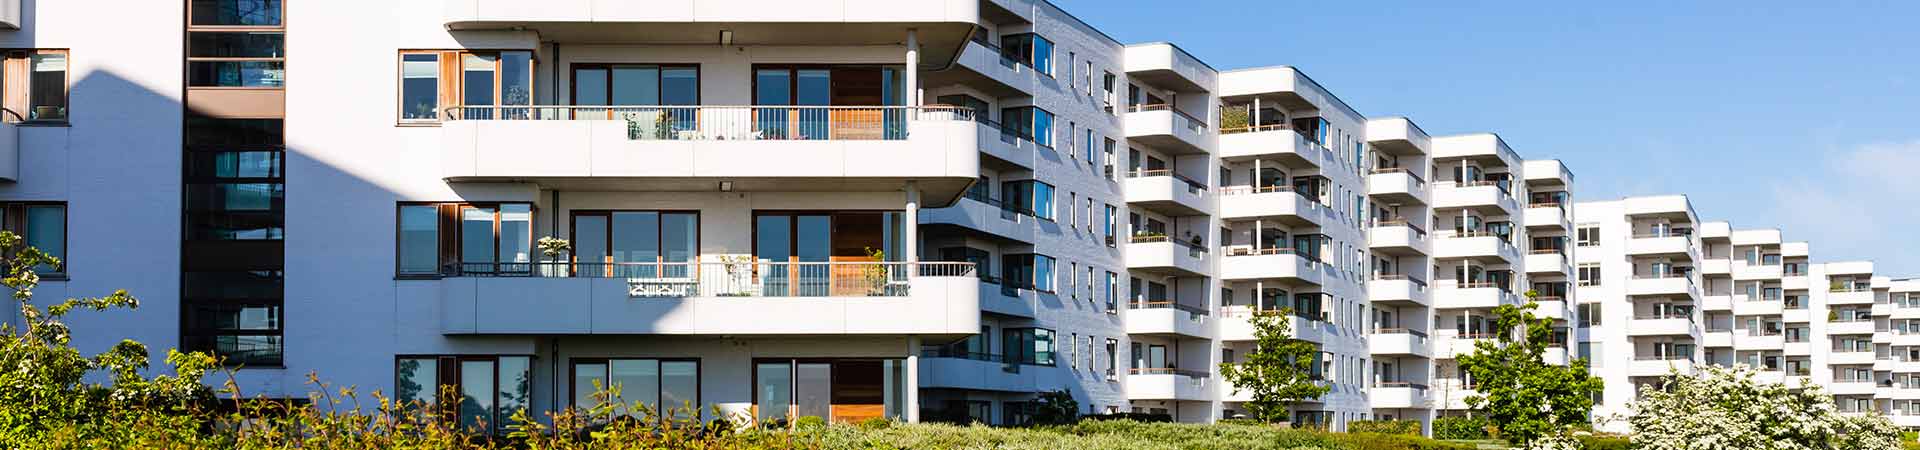 Sisteme centralizate aer condiționat pentru blocuri de apartamente